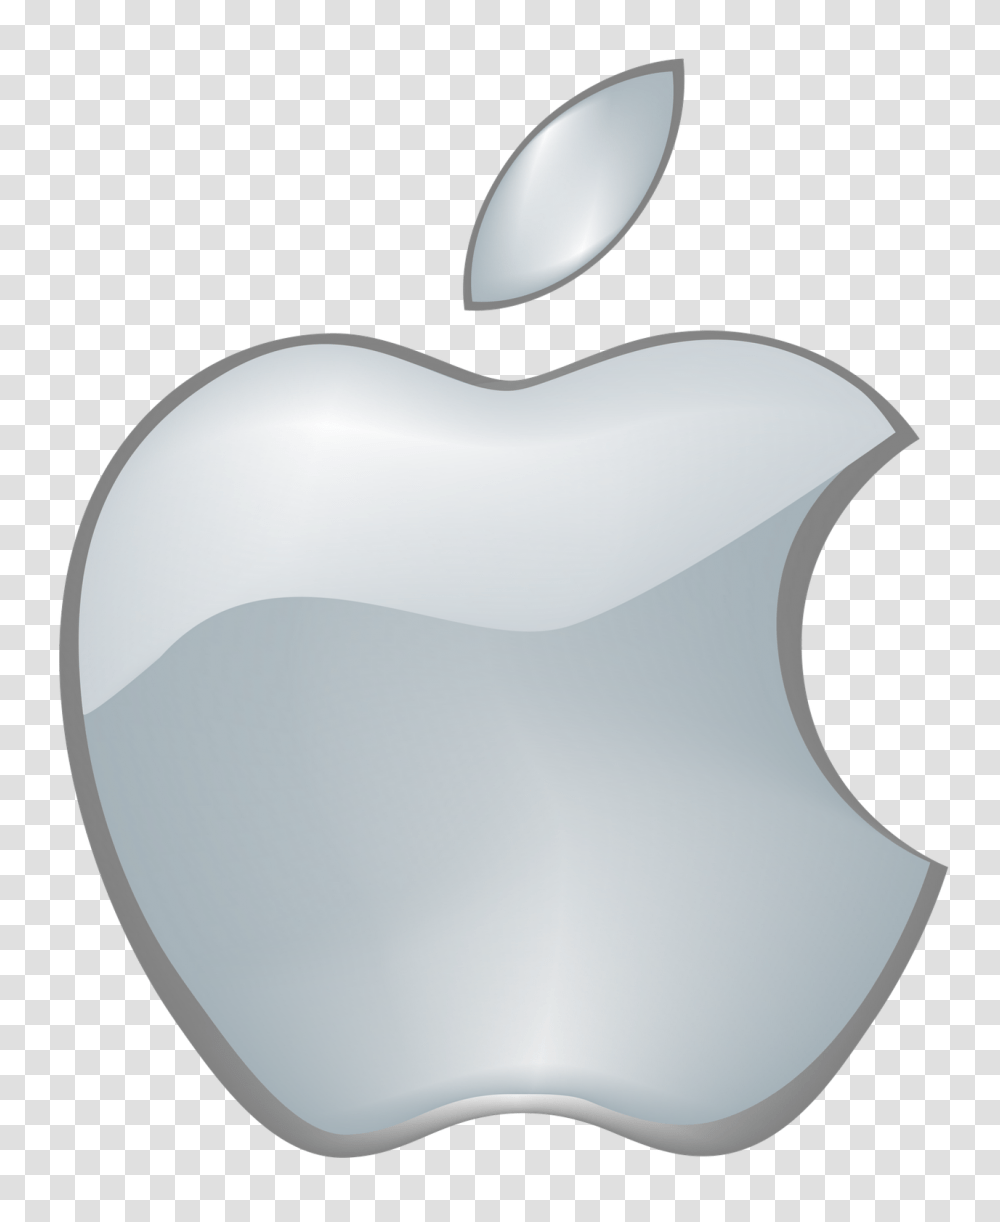 Apple Logo, Lamp, Electronics, Screen Transparent Png